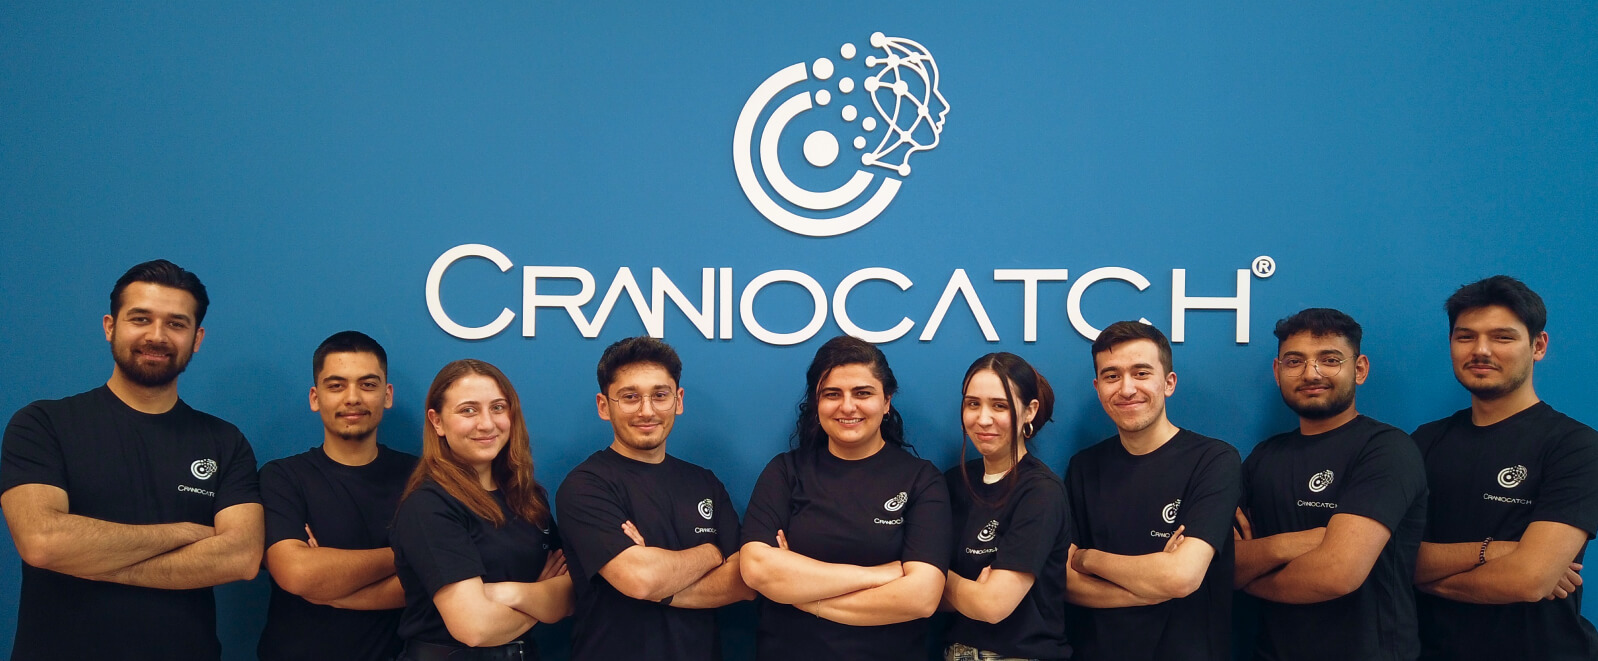 CranioCatch ekibi